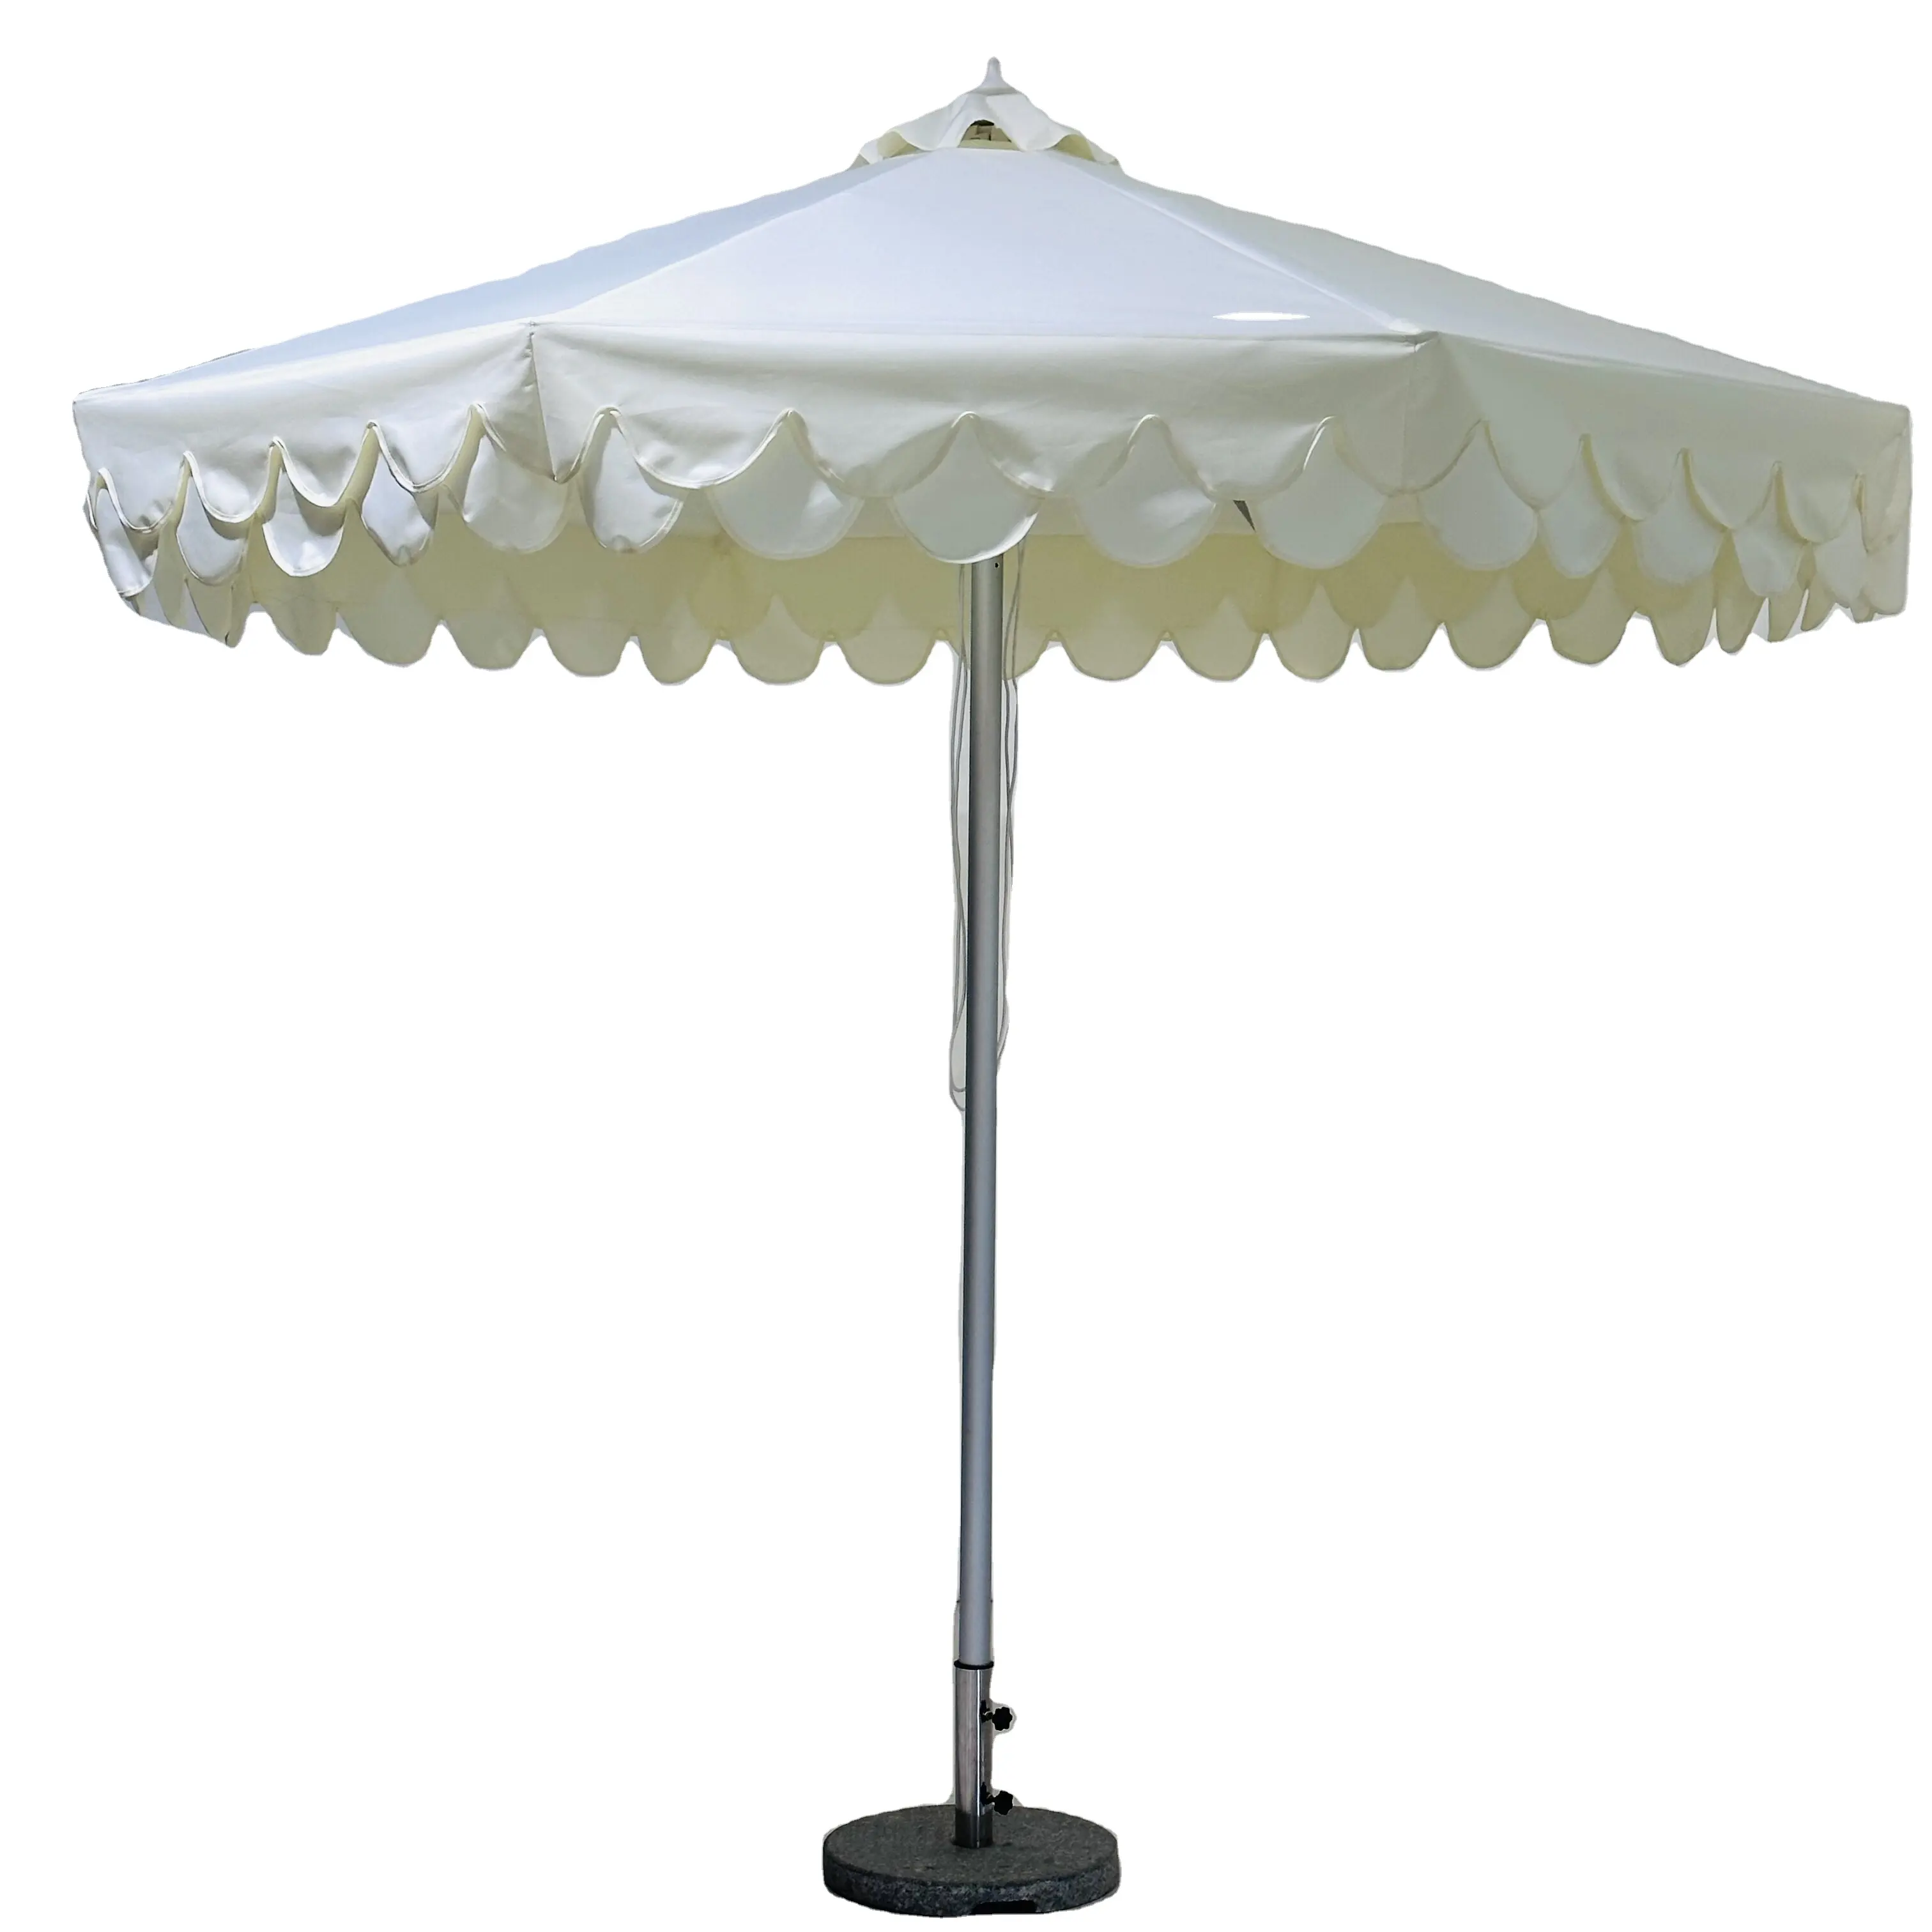 Payung tongkat cetre murah buatan Tiongkok, payung outdoor hitam dan putih, payung berlekuk luar ruangan untuk taman